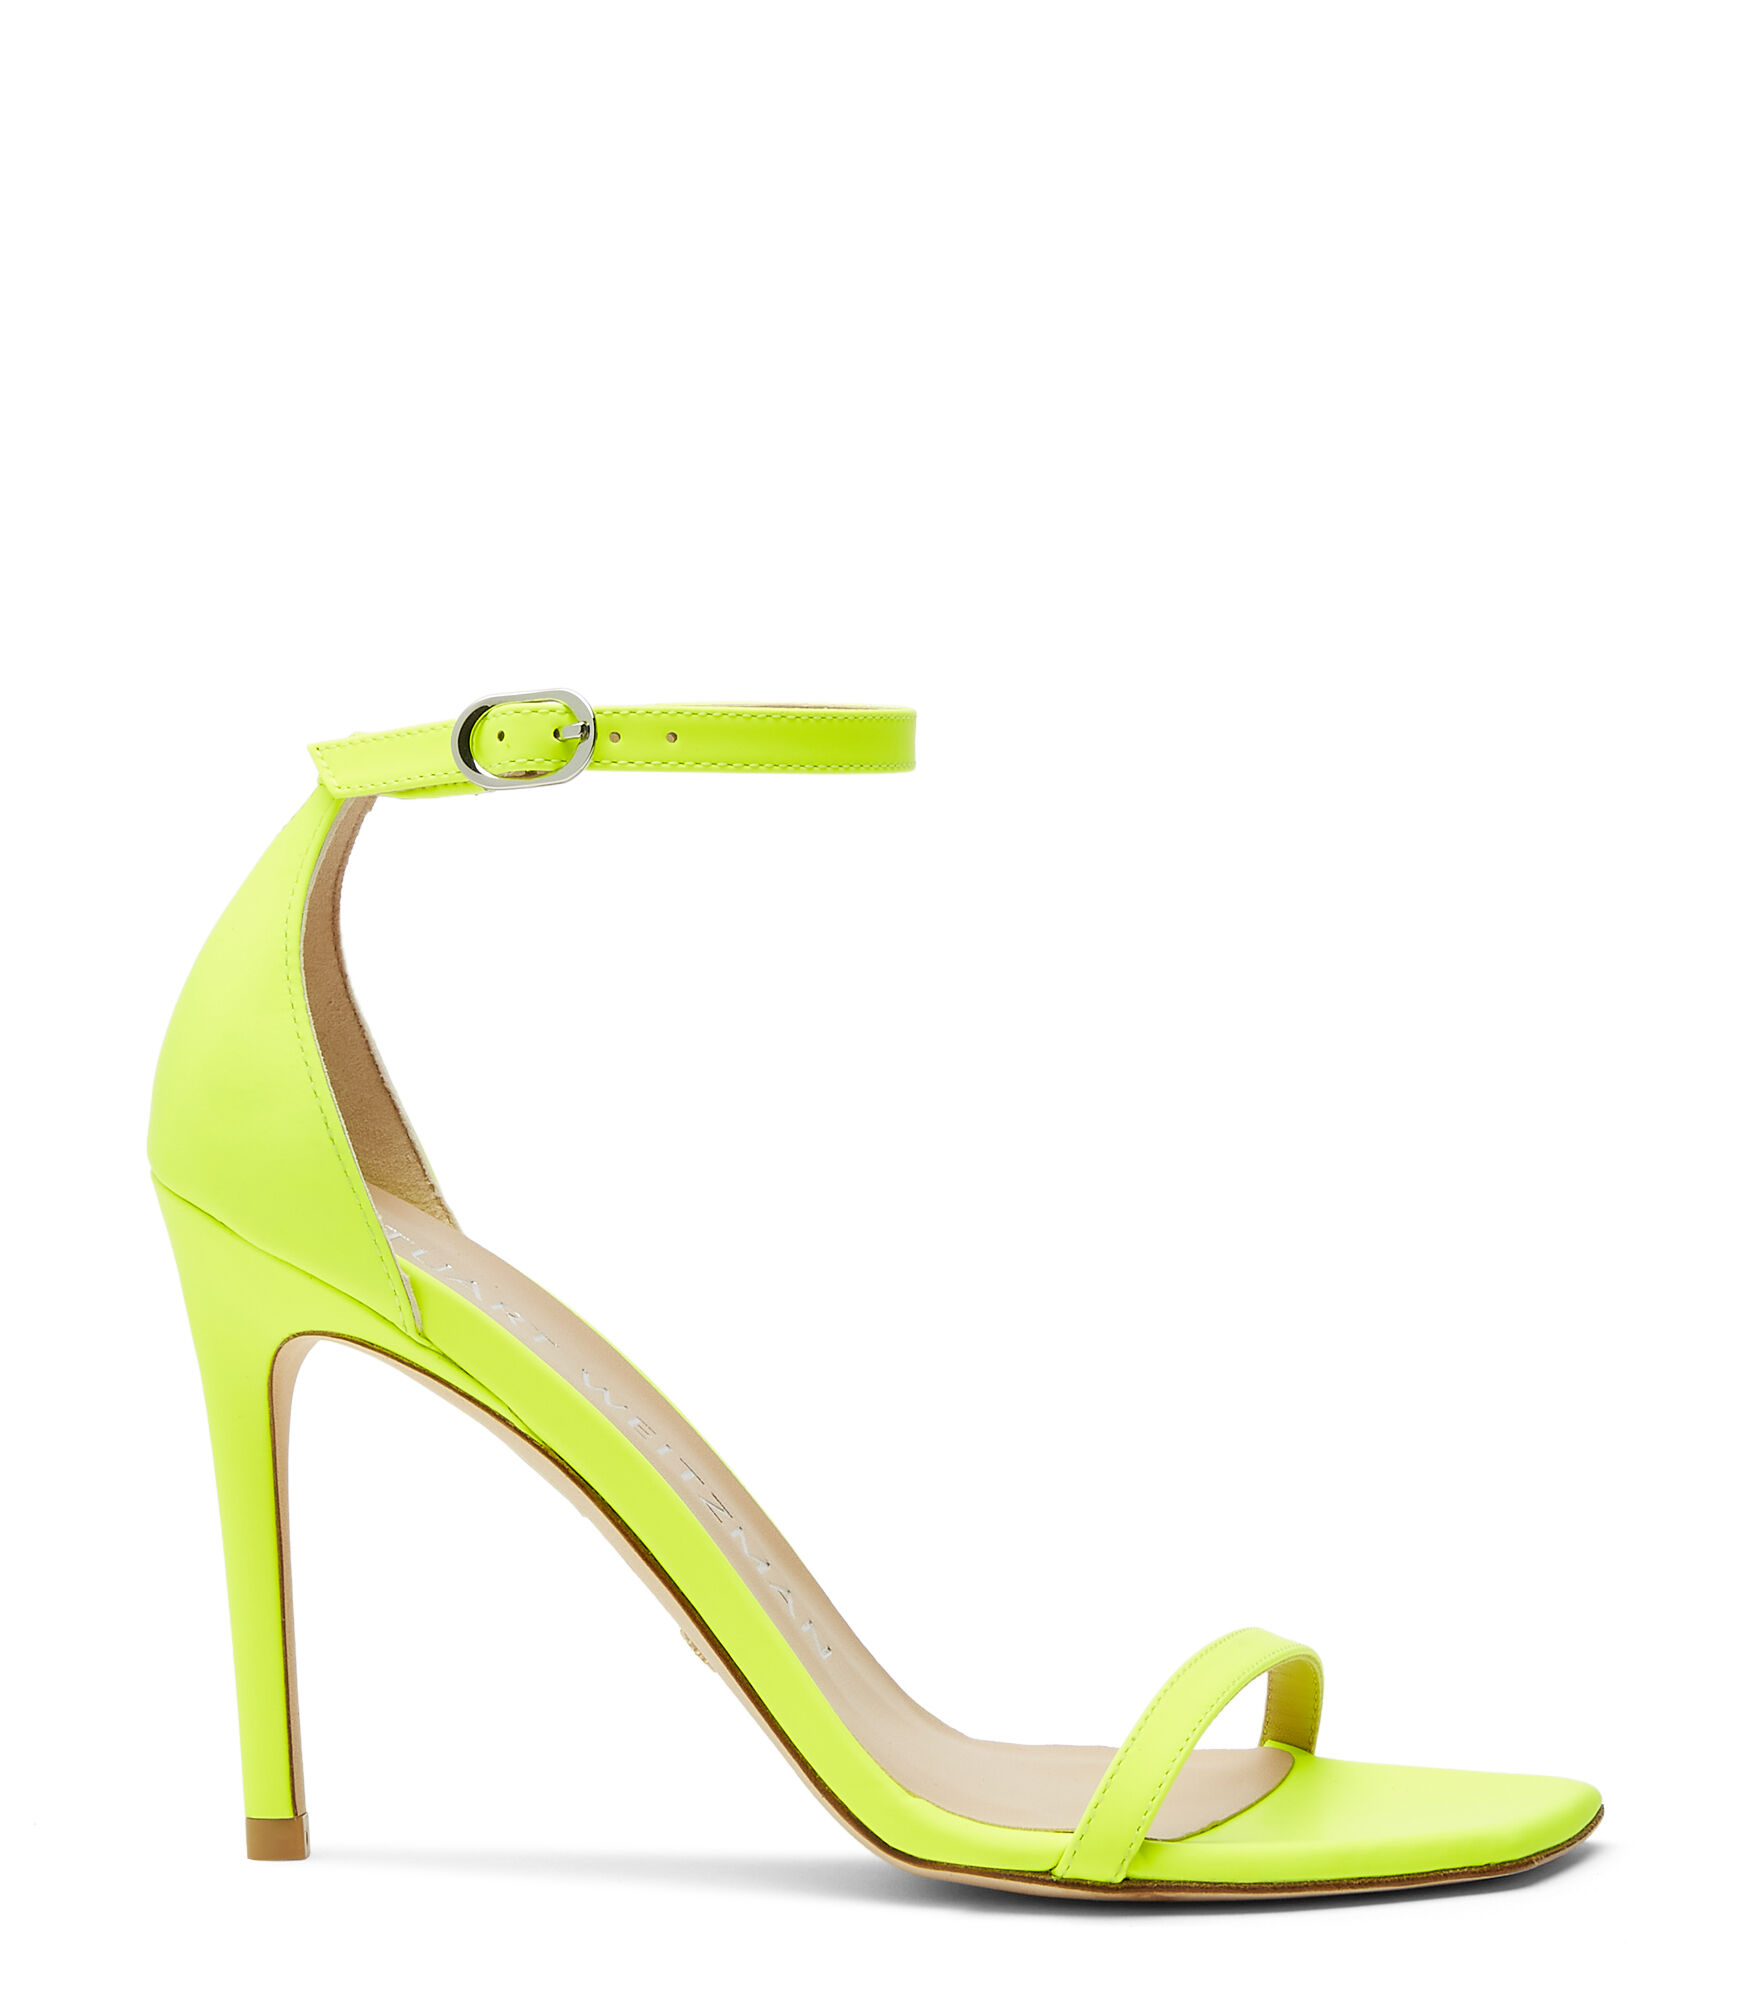 Jorja Lace Up Heels in Neon Yellow